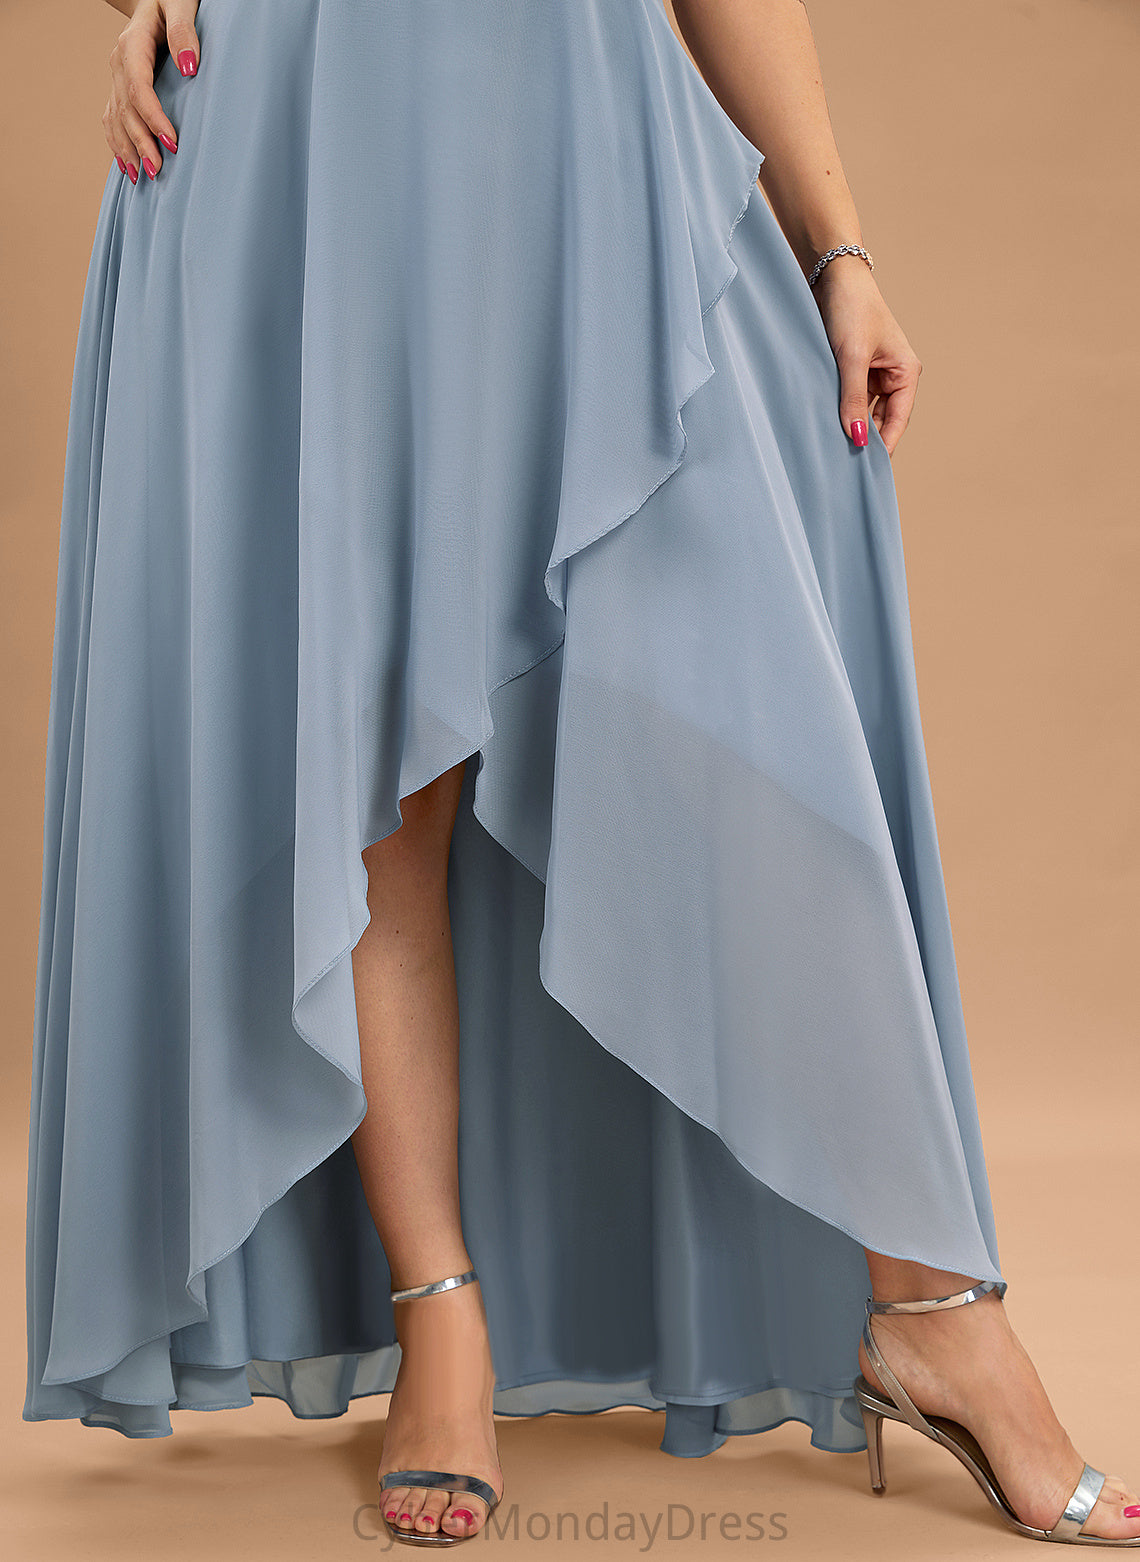 V-neck A-Line Neckline Fabric Straps Length Asymmetrical Silhouette Carissa Natural Waist Floor Length Sleeveless Bridesmaid Dresses